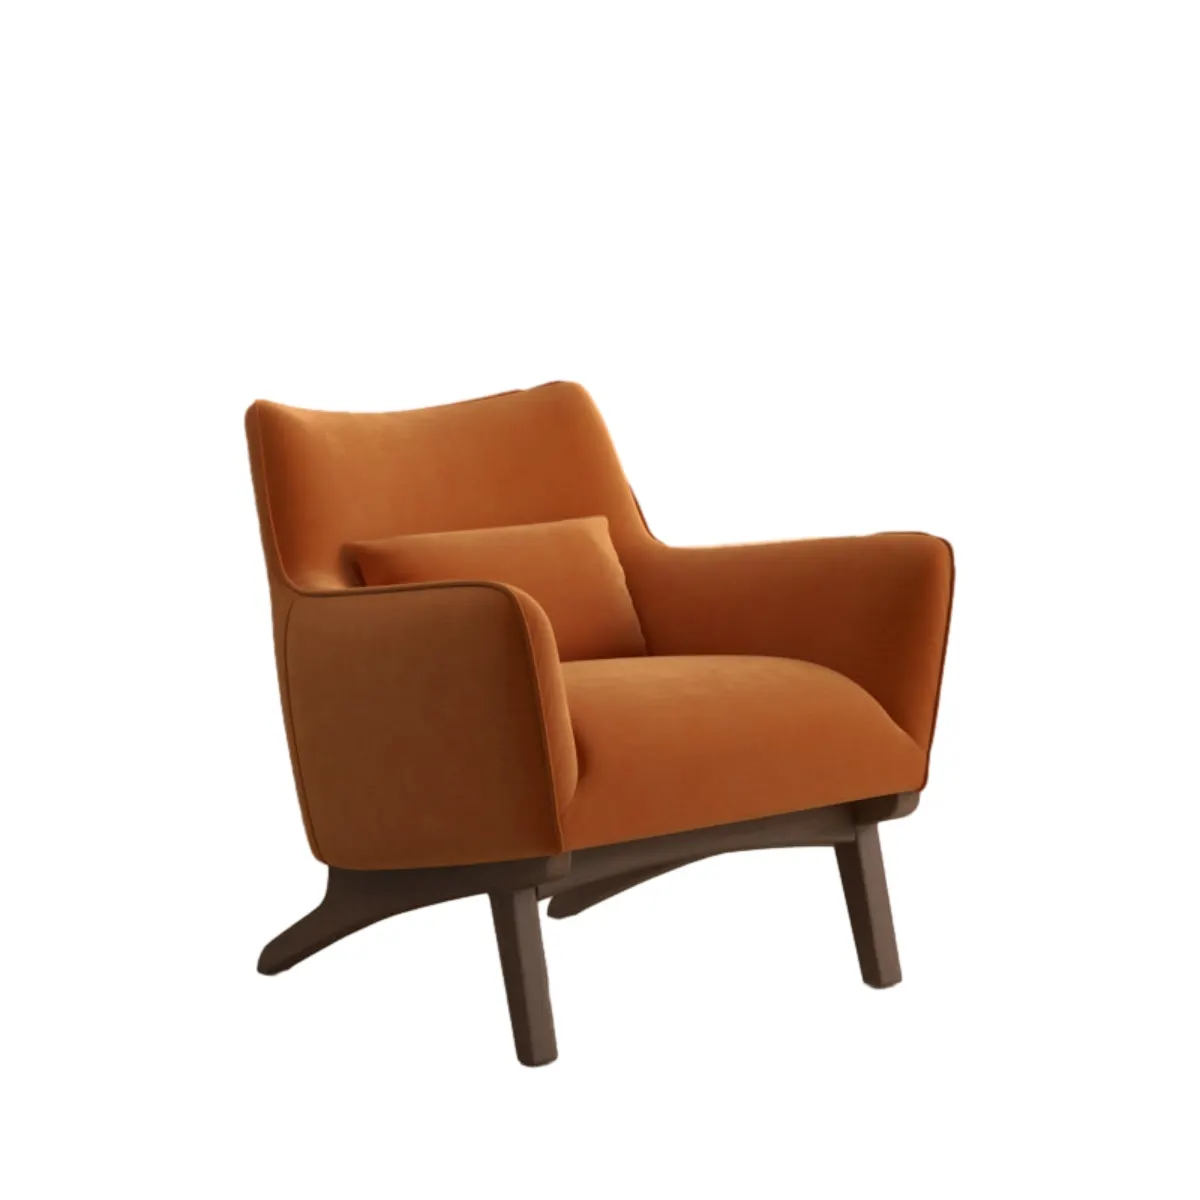 OEM arancione francese soggiorno salotto divano divano divano divano rustico accento poltrona imbottita